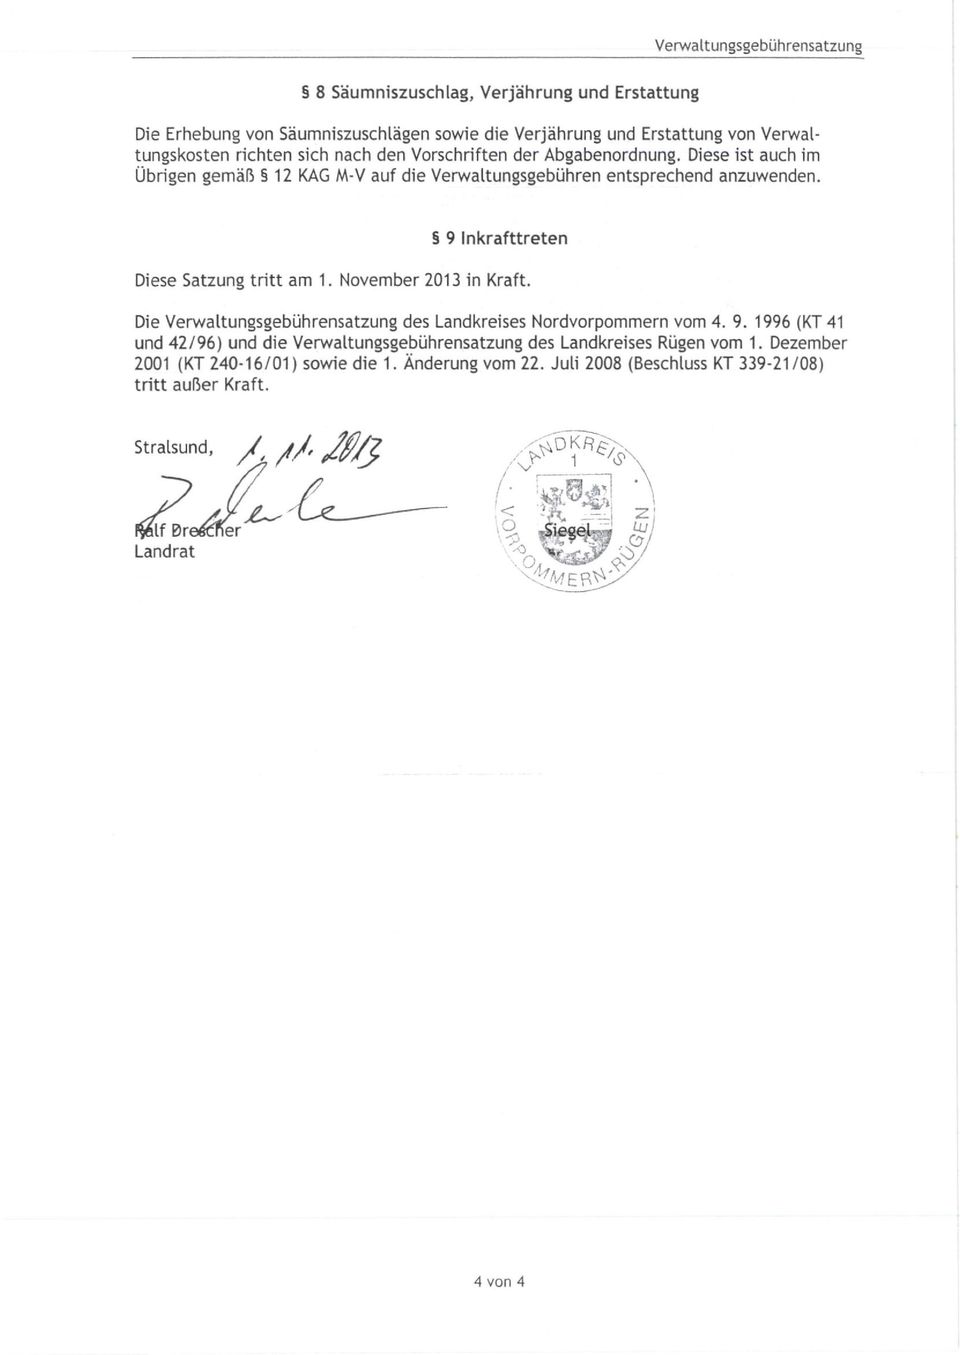 9 Inkrafttreten Diese Satzung tritt am 1. November 2013 in Kraft. Die Verwaltungsgebührensatzung des Landkreises Nordvorpommern vom 4. 9.